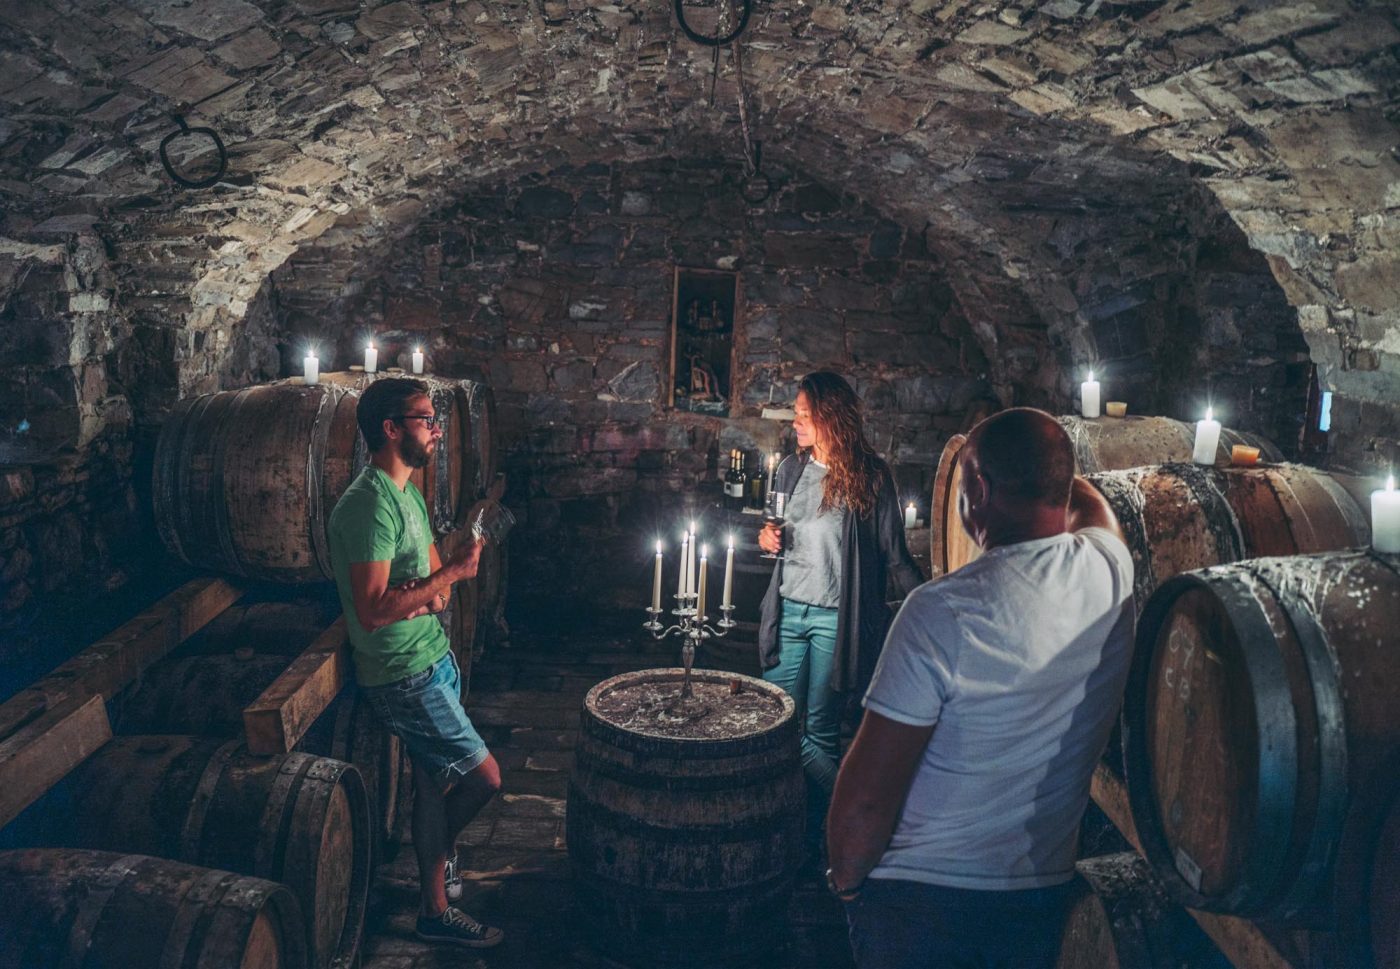 Inside the wine cellar at Cejkotova Domacija Restaurant in Vipava Valley